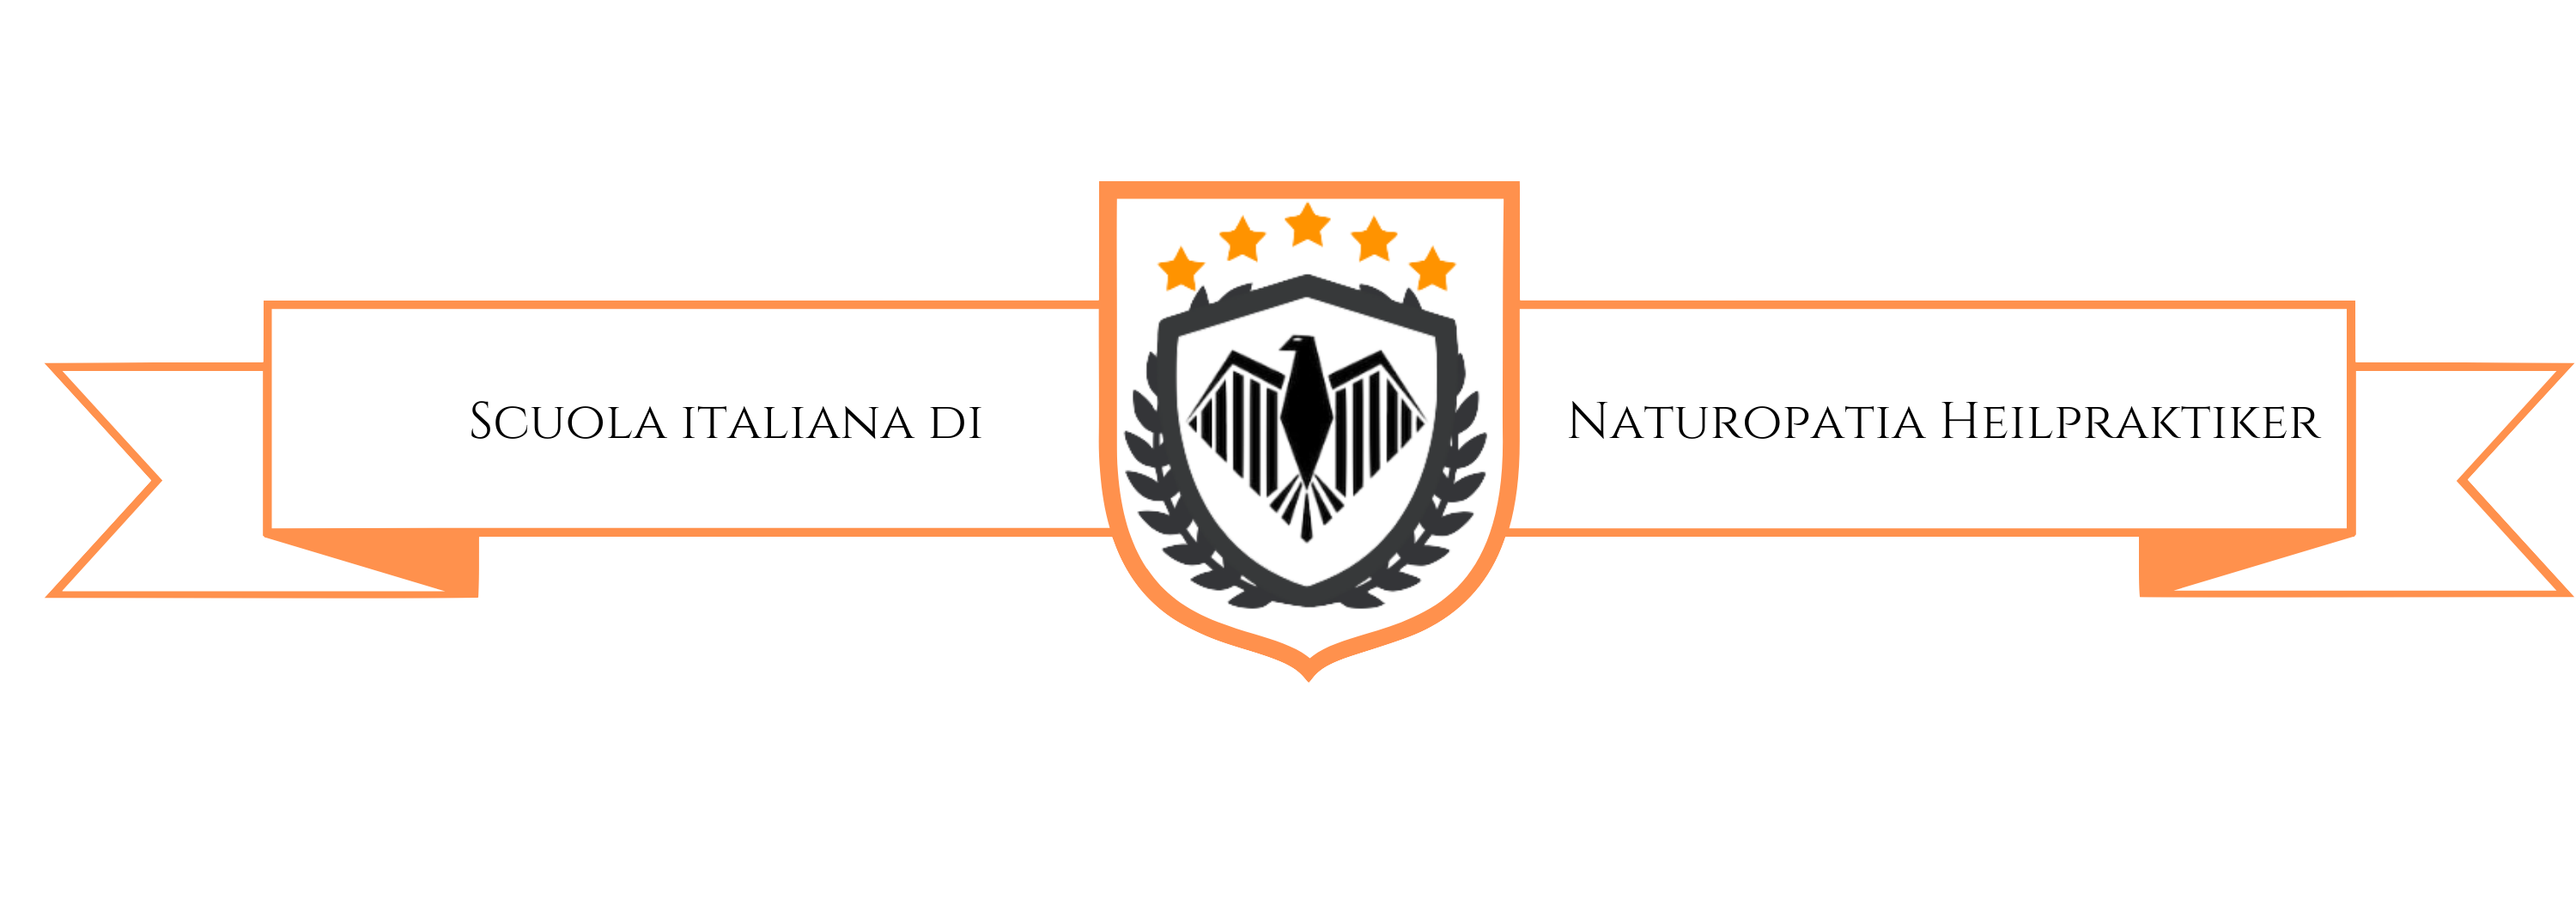 Scuola italiana di naturopatia heilpraktiker online